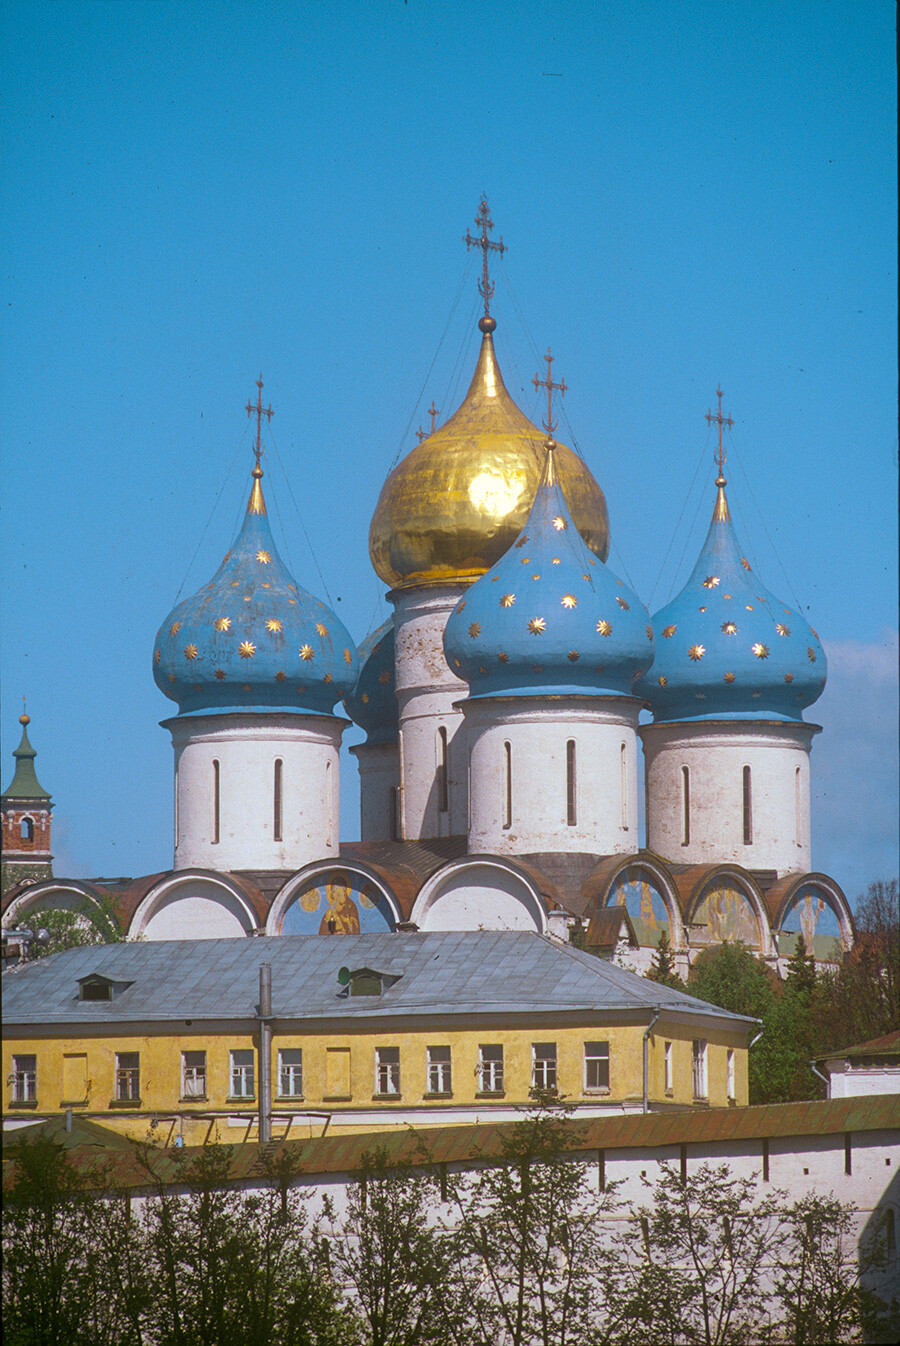  Sérguiyev Posad, Monasterio de la Trinidad-San Sergio. Catedral de la Dormición, vista sureste, Primer plano: Muro sur del monasterio y claustros de Santa Bárbara. 29 de mayo de 1999